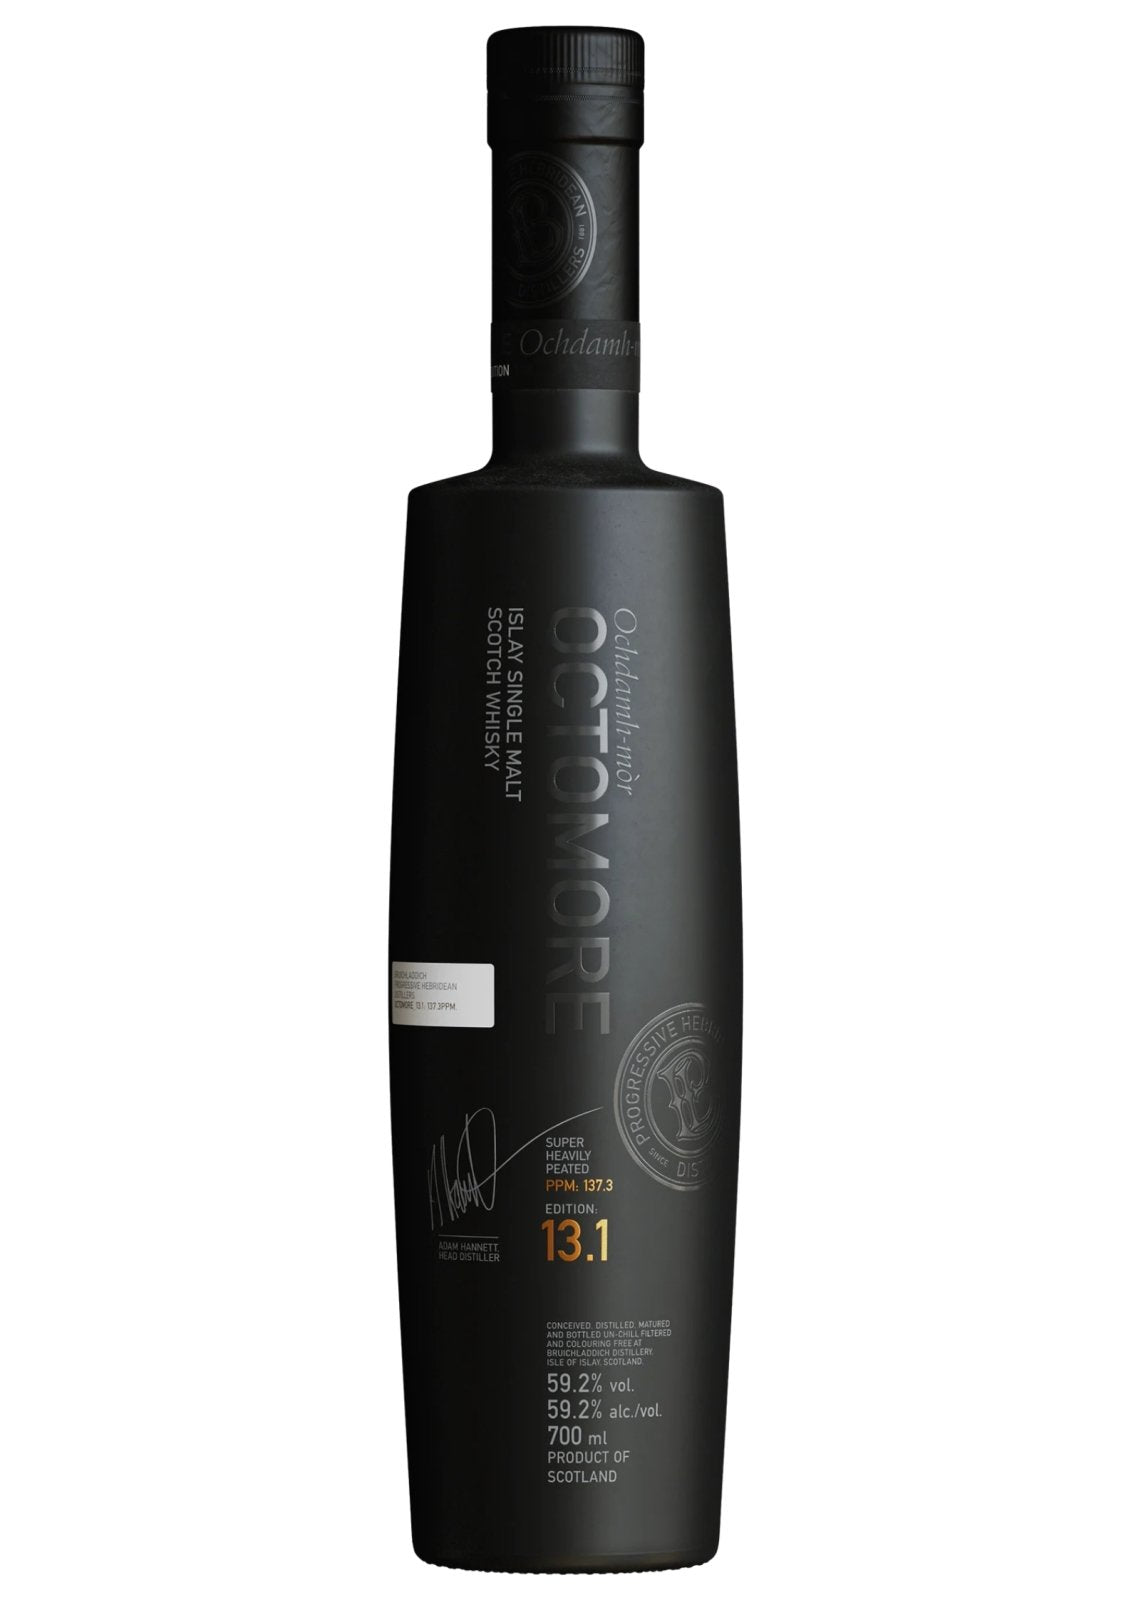 Bottle of Octomore 13.1, Scottish Barley, Islay Single Malt Whisky, 59.2%